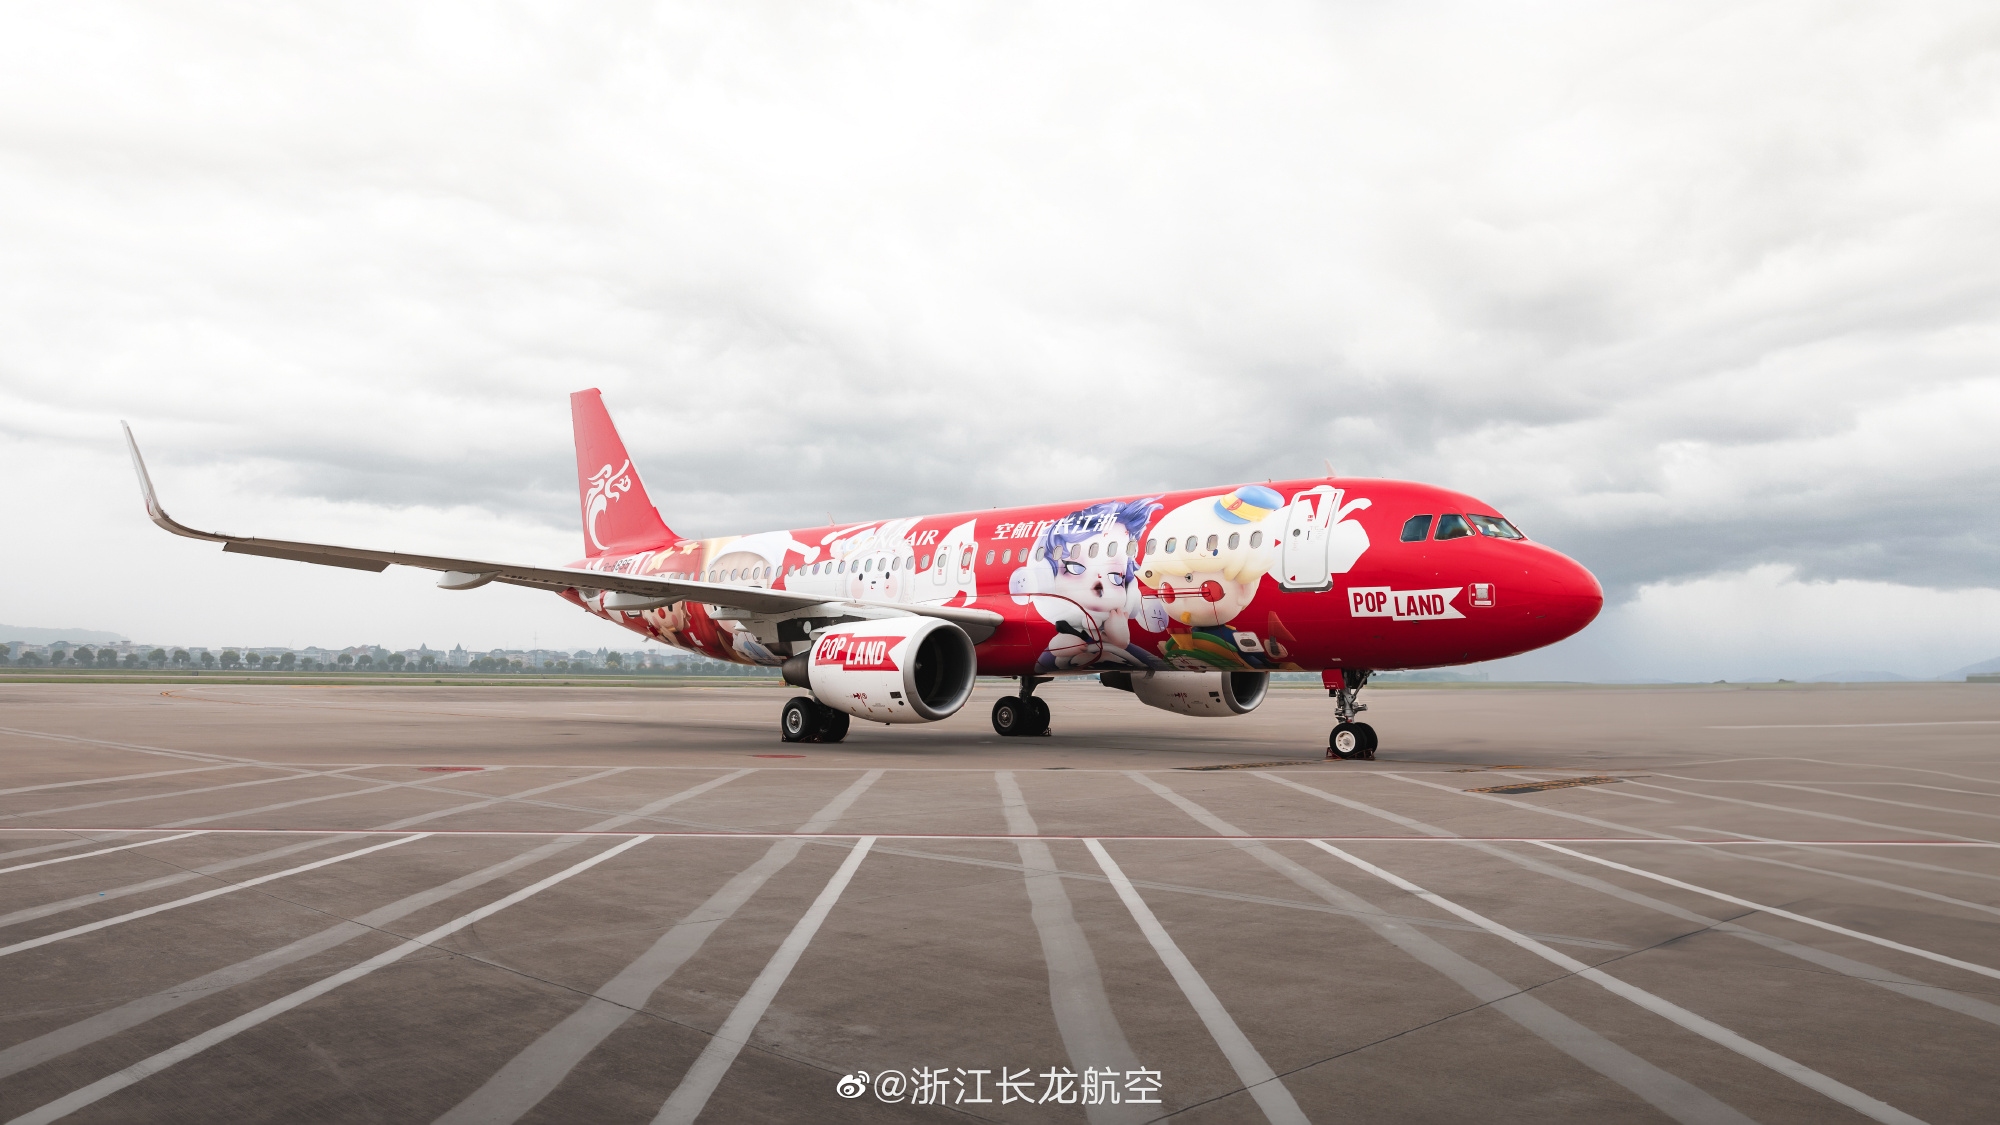 长龙航空“泡泡玛特城市乐园号”彩绘飞机正式启航